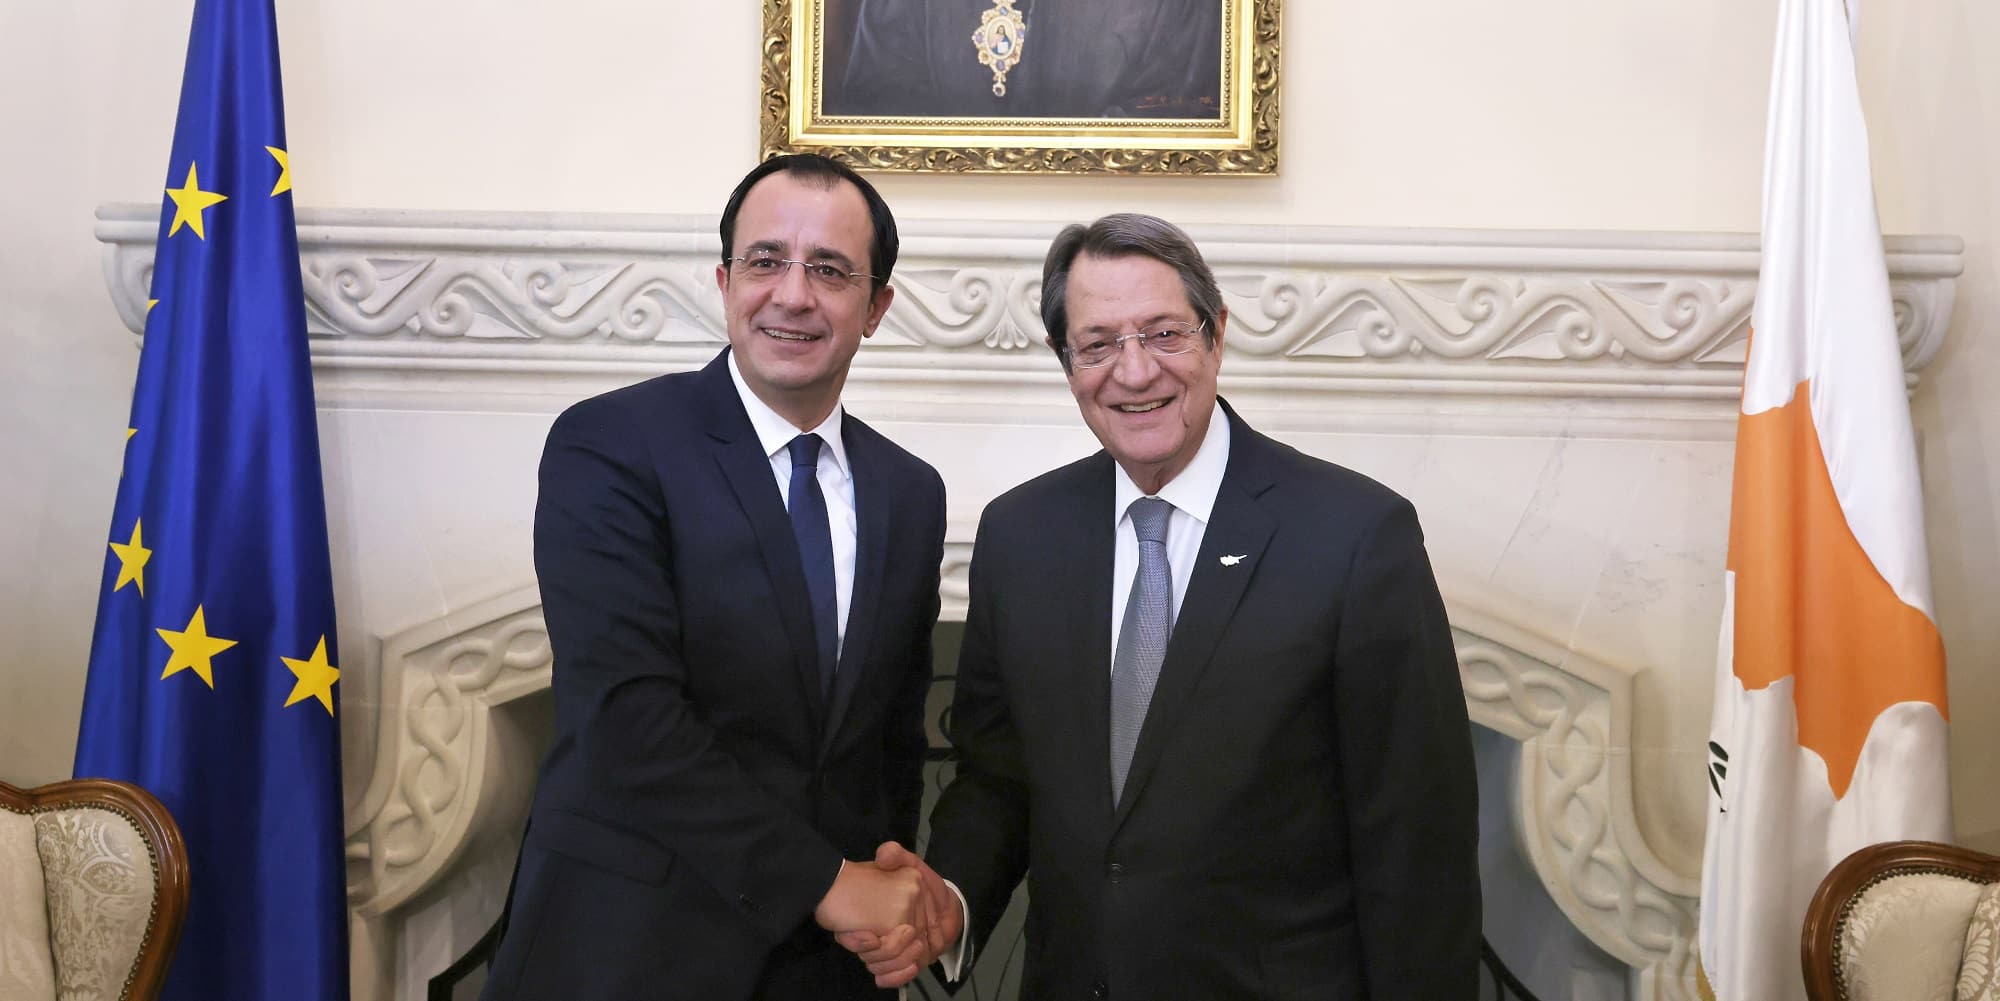 Ο πρόεδρος της Κύπρου, Νίκος Χριστοδουλίδης και ο απερχόμενος πρόεδρος, Νίκος Αναστασιάδης